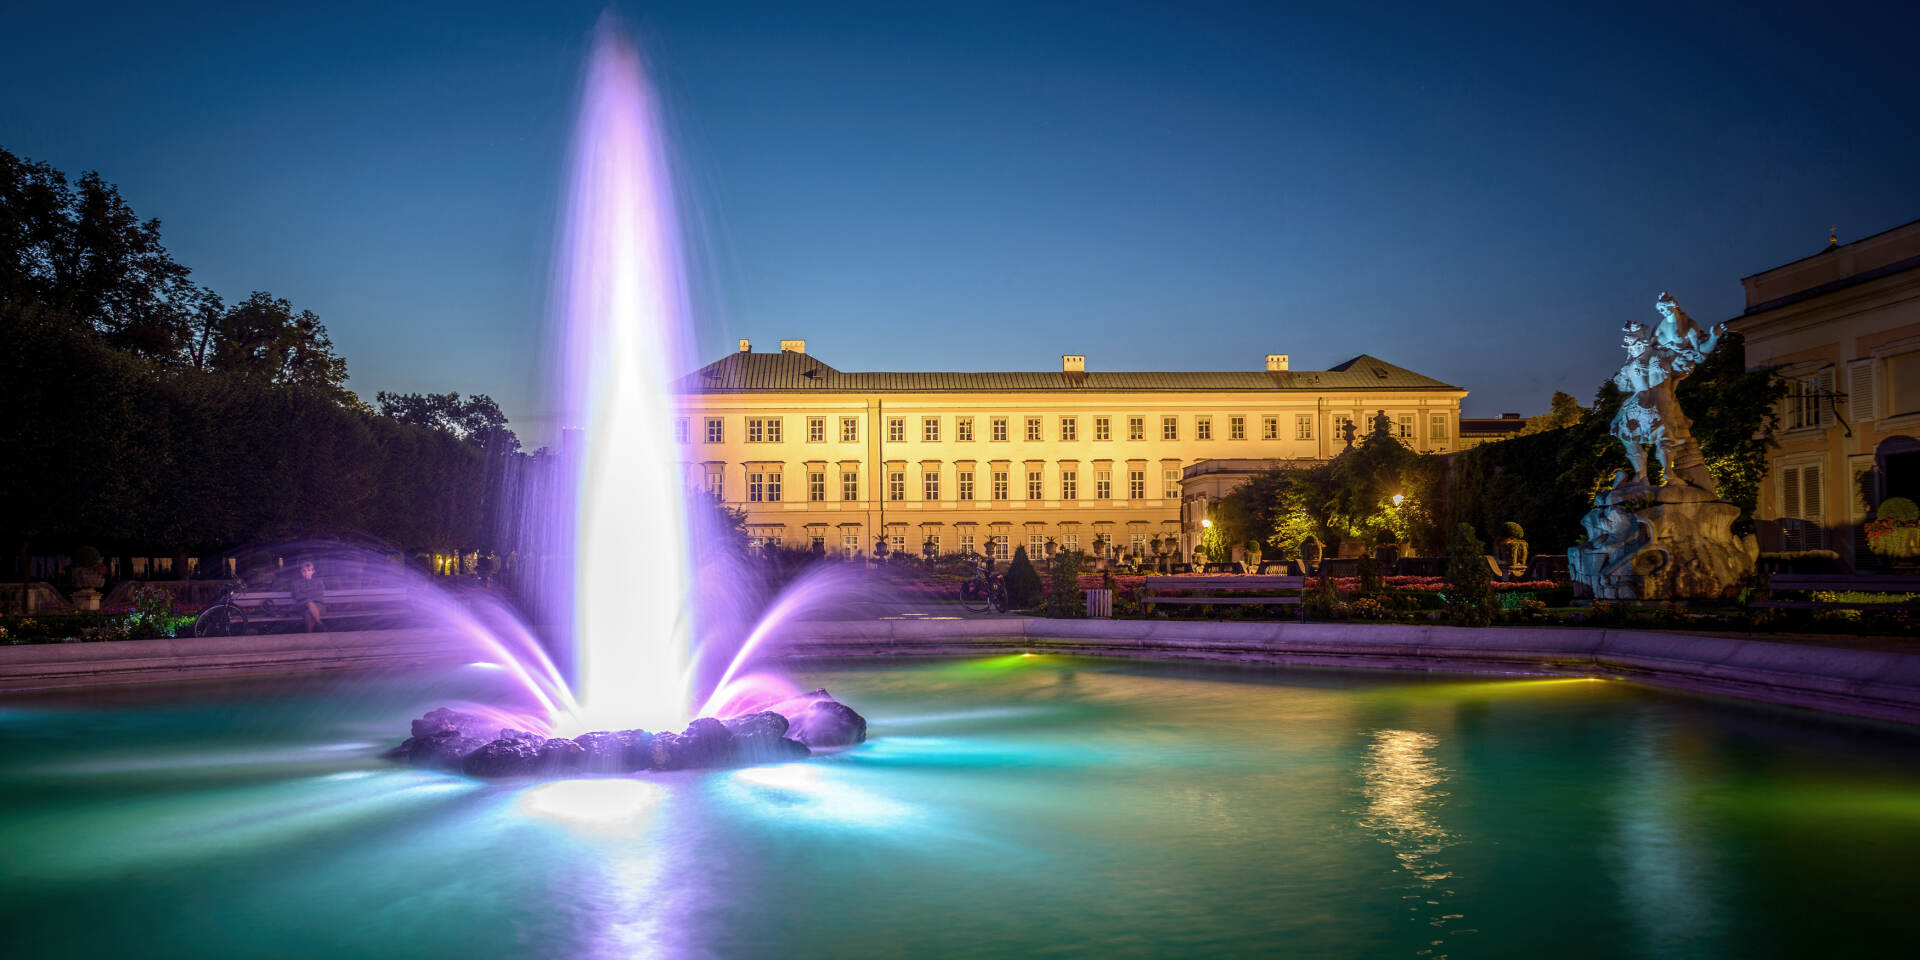 Mirabell Palace at night © Tourismus Salzburg GmbH